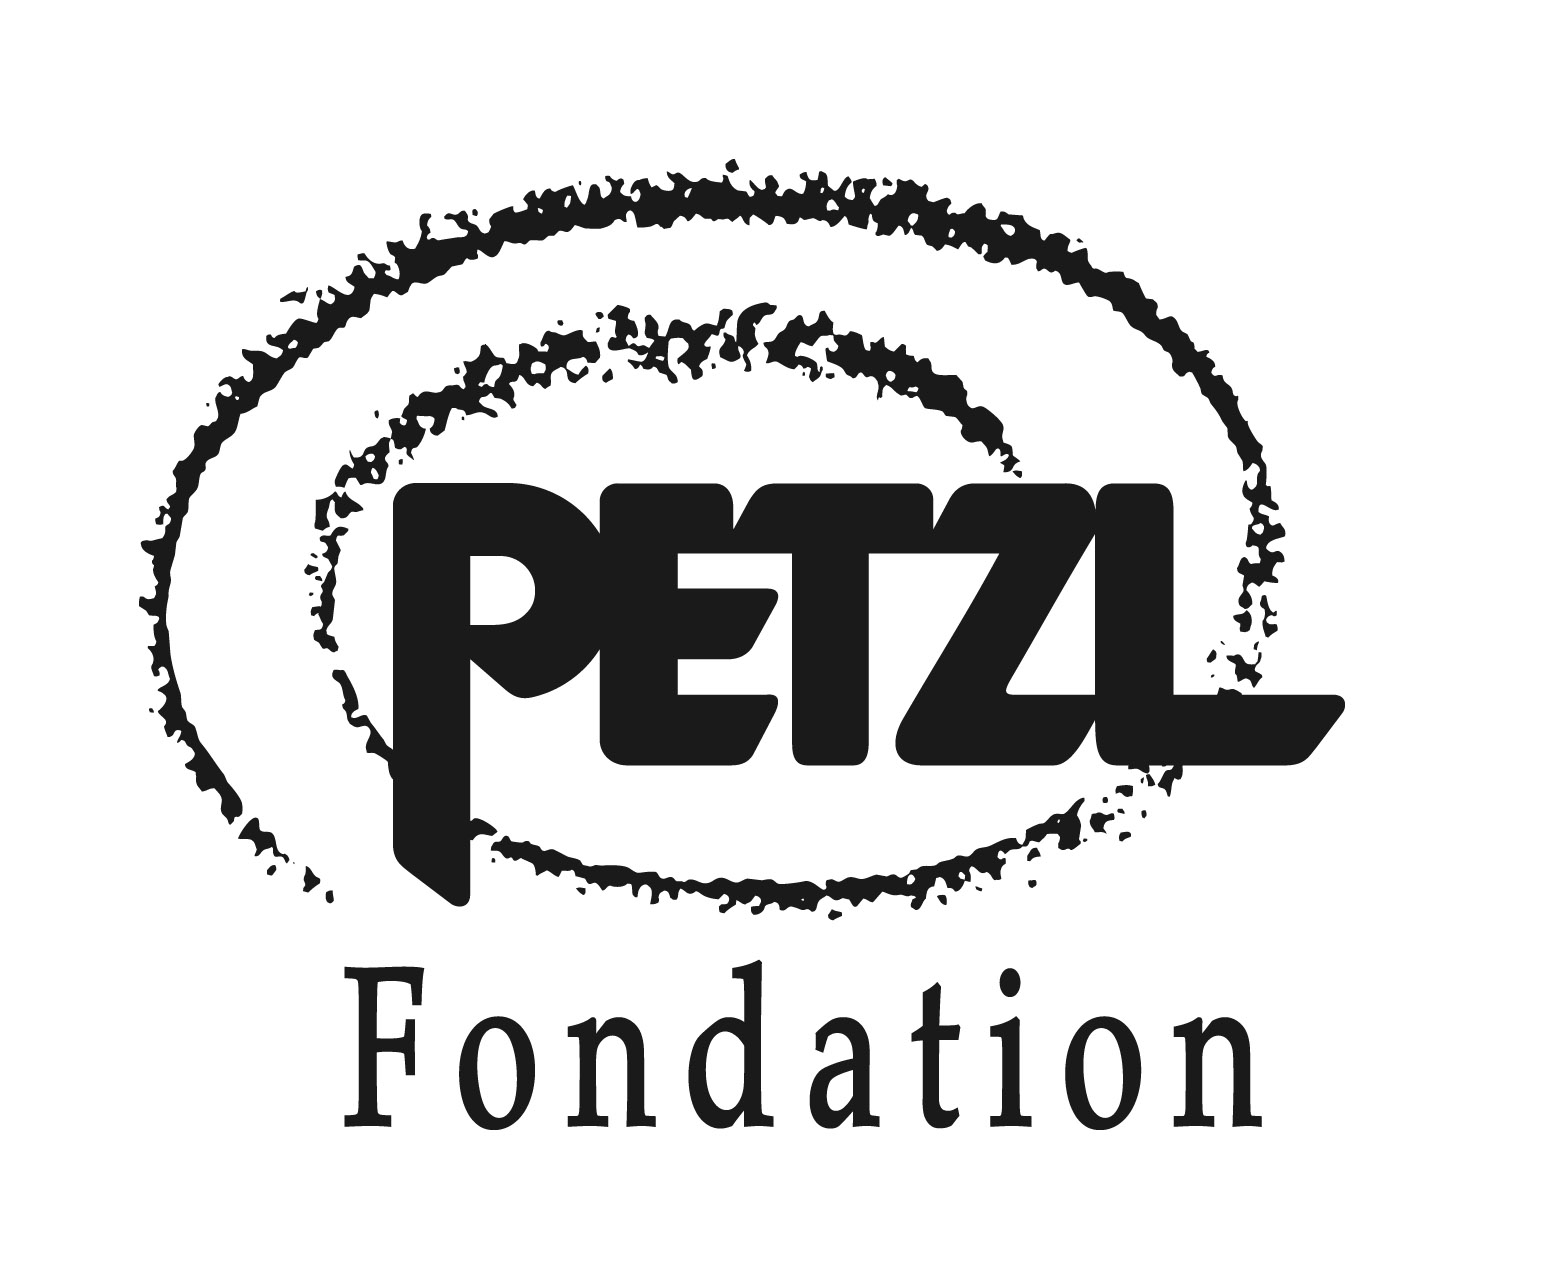 La Fondation Petzl